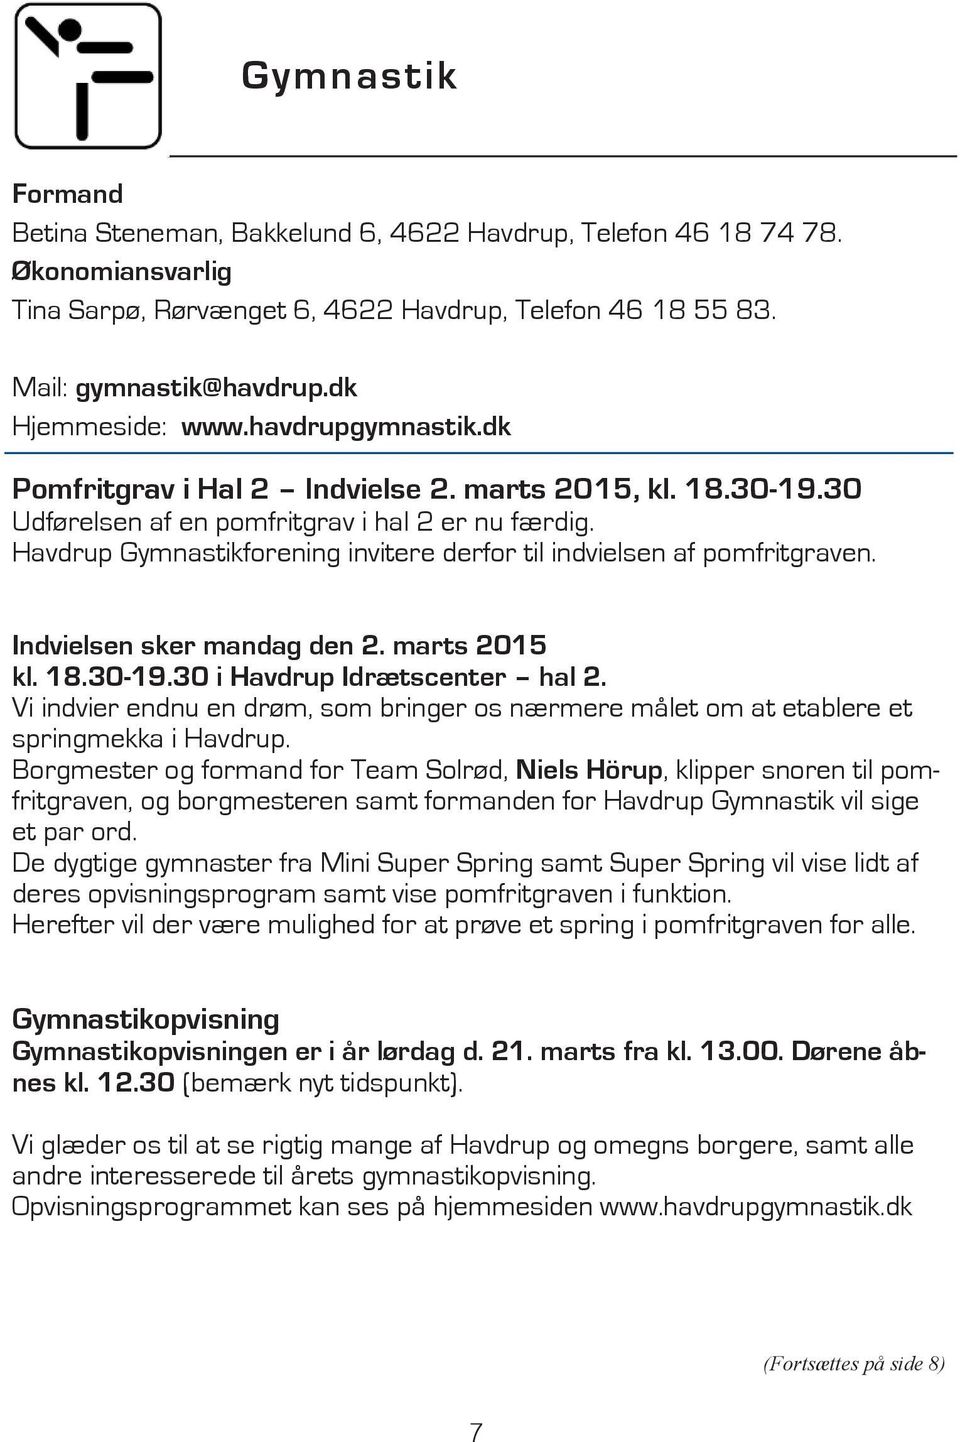 Havdrup Gymnastikforening invitere derfor til indvielsen af pomfritgraven. Indvielsen sker mandag den 2. marts 2015 kl. 18.30-19.30 i Havdrup Idrætscenter hal 2.